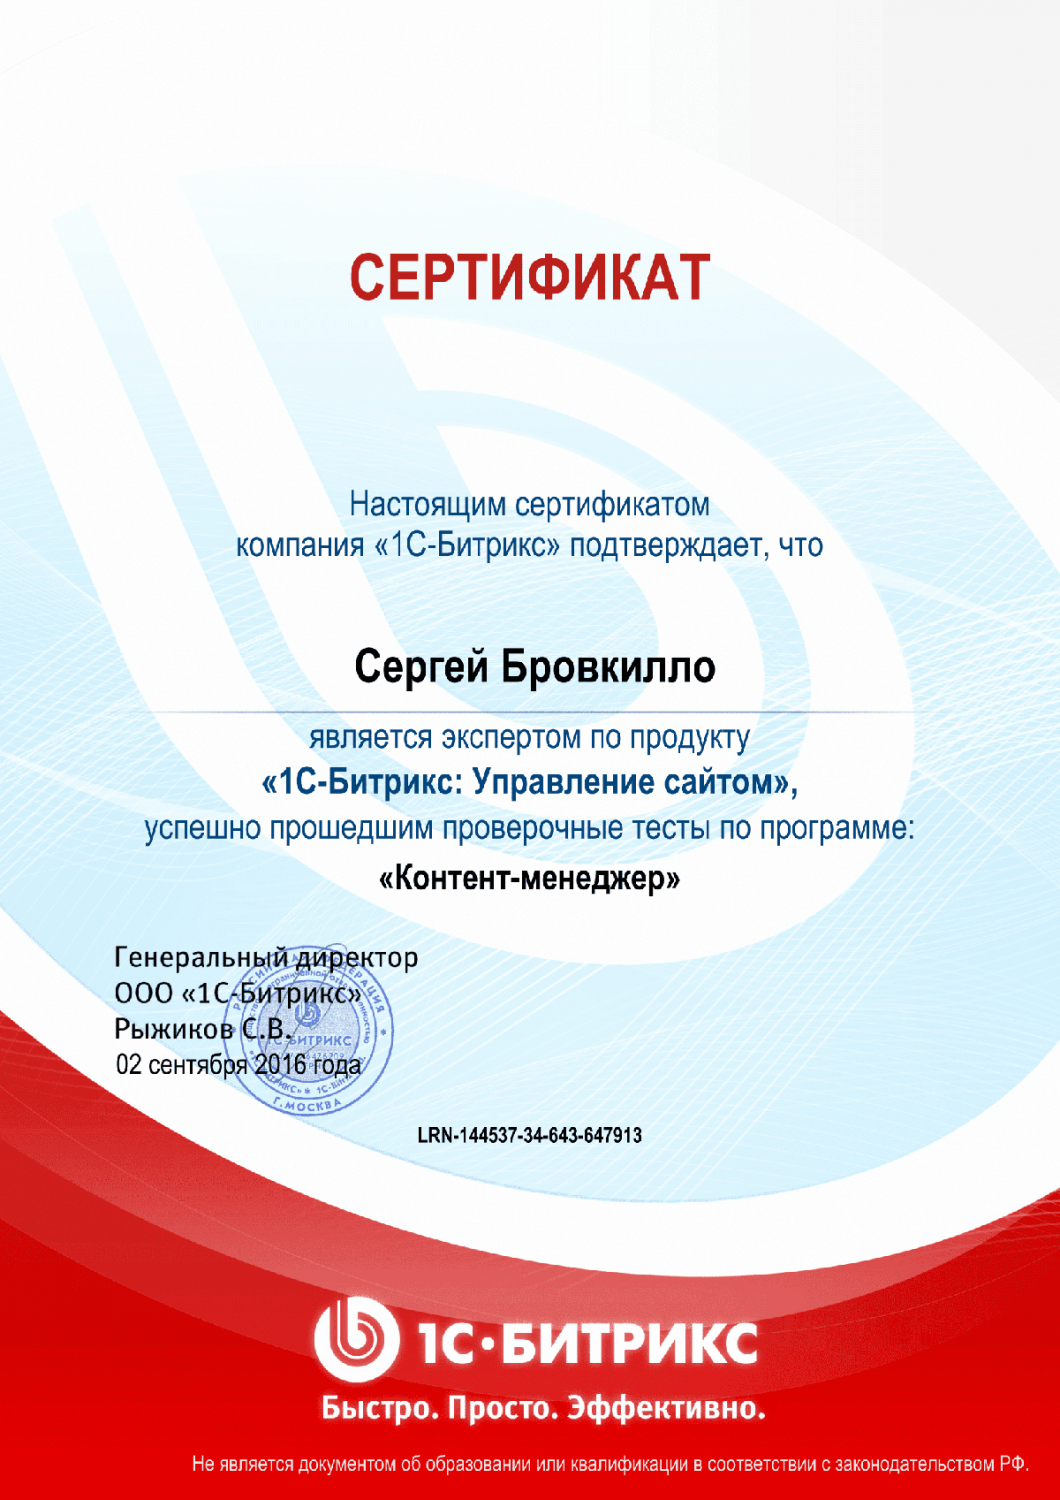 Сертификат эксперта по программе "Контент-менеджер"" в Брянска